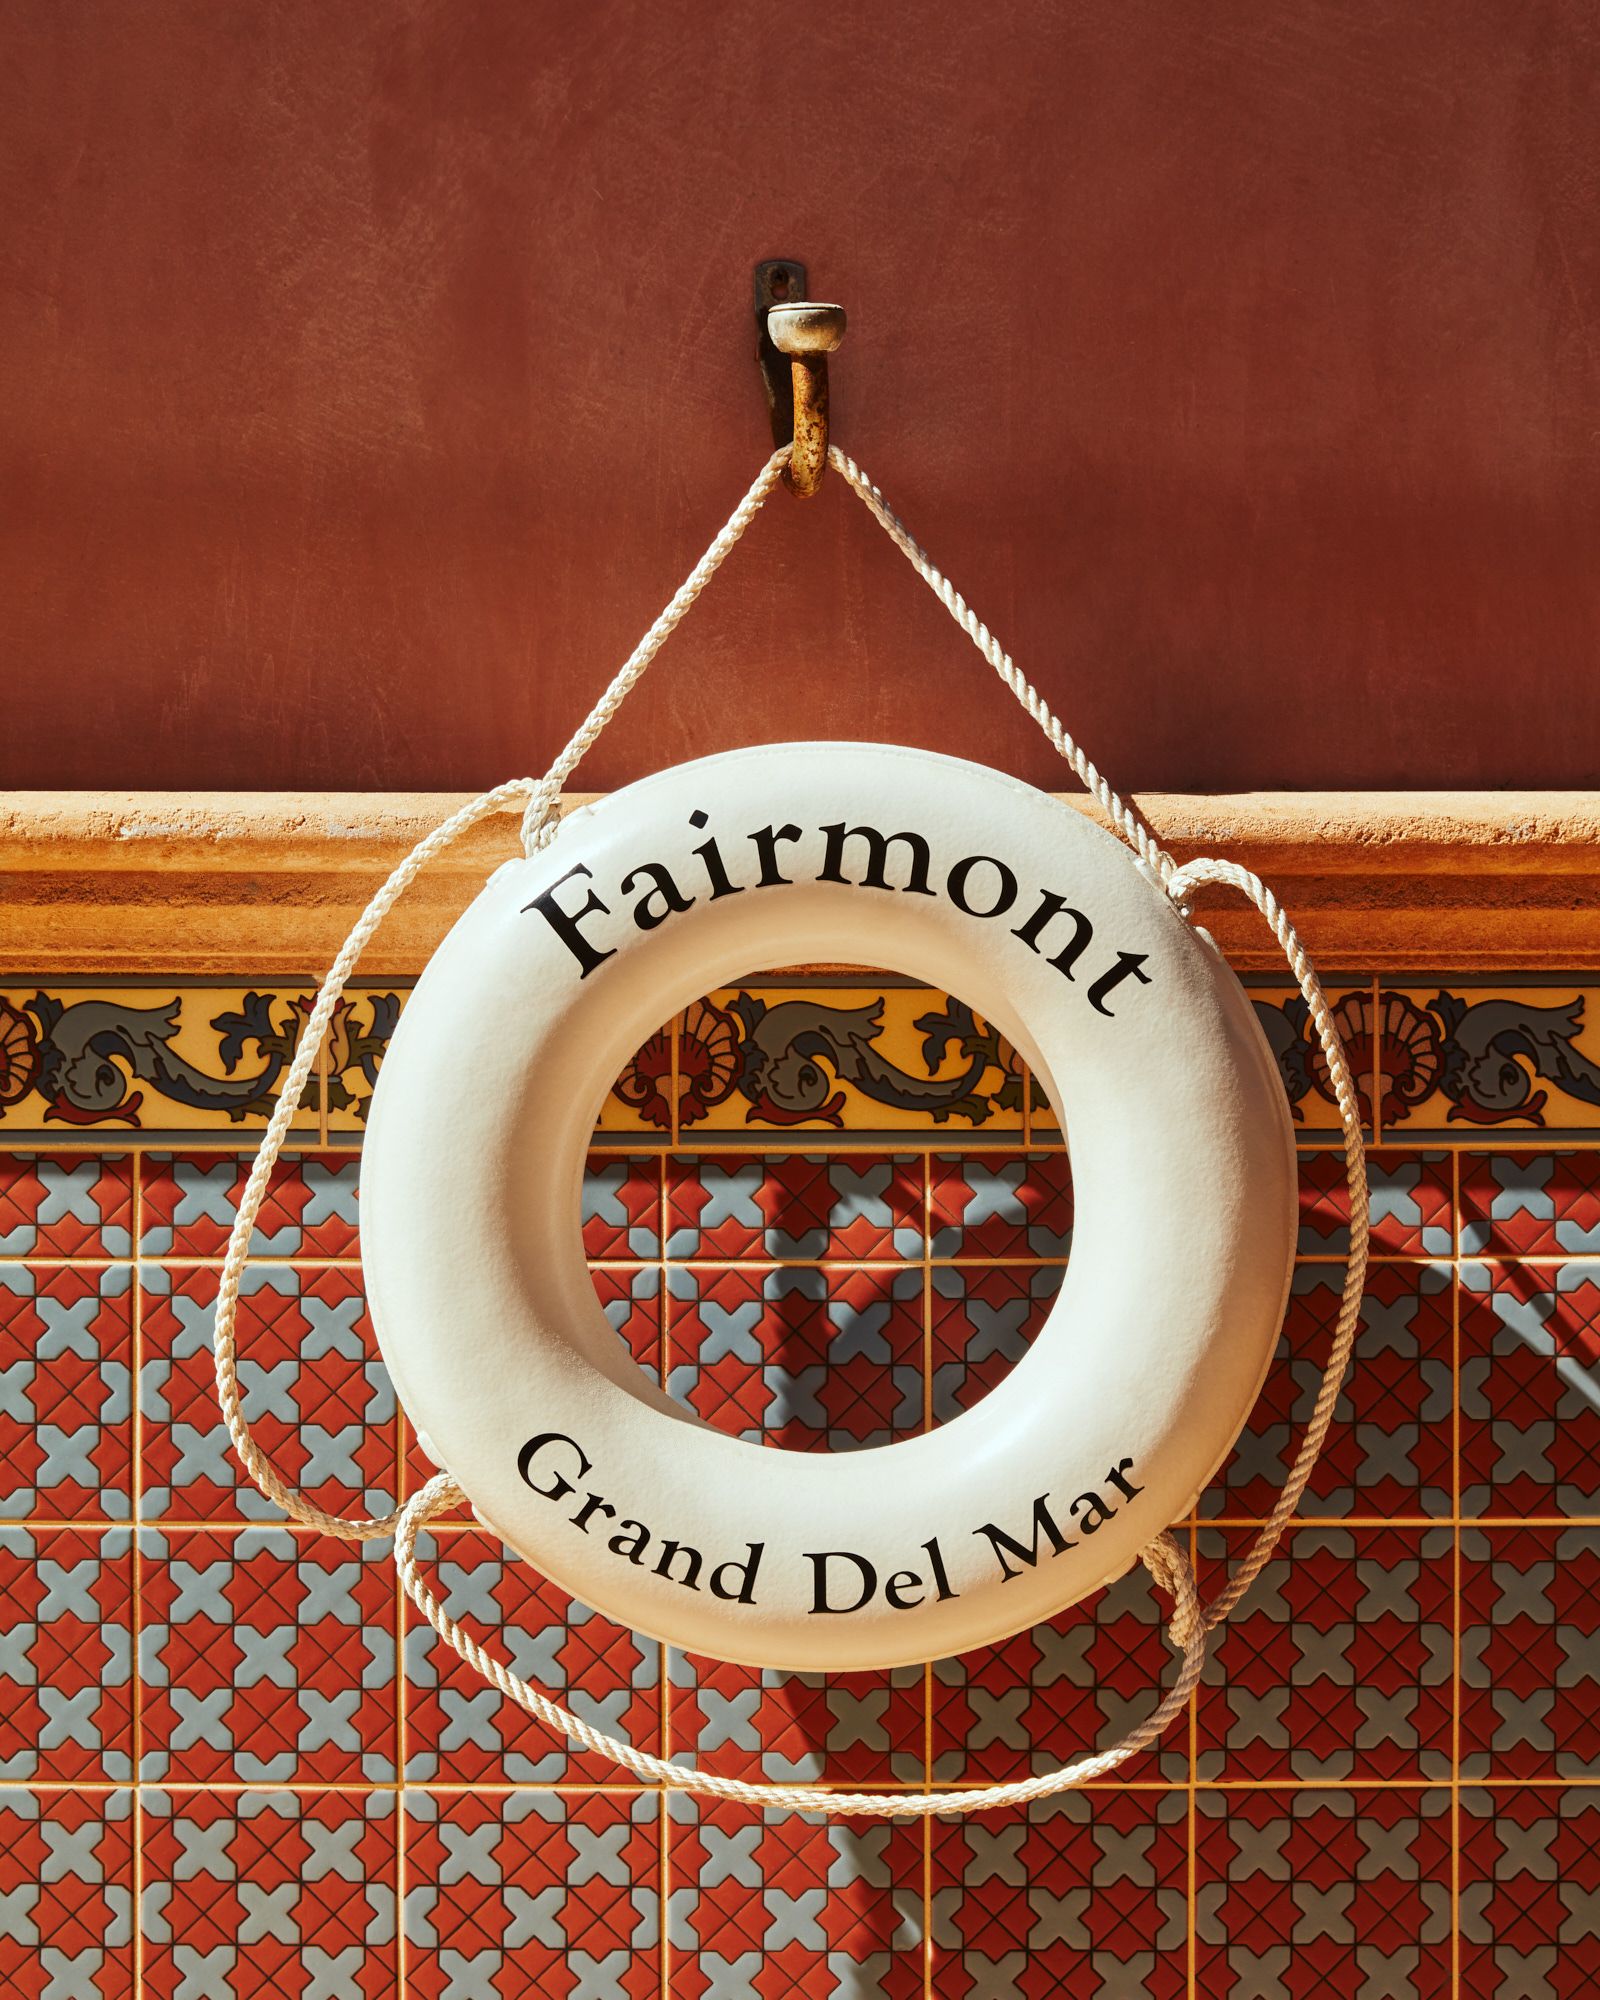 Fairmont Grand Del Mar